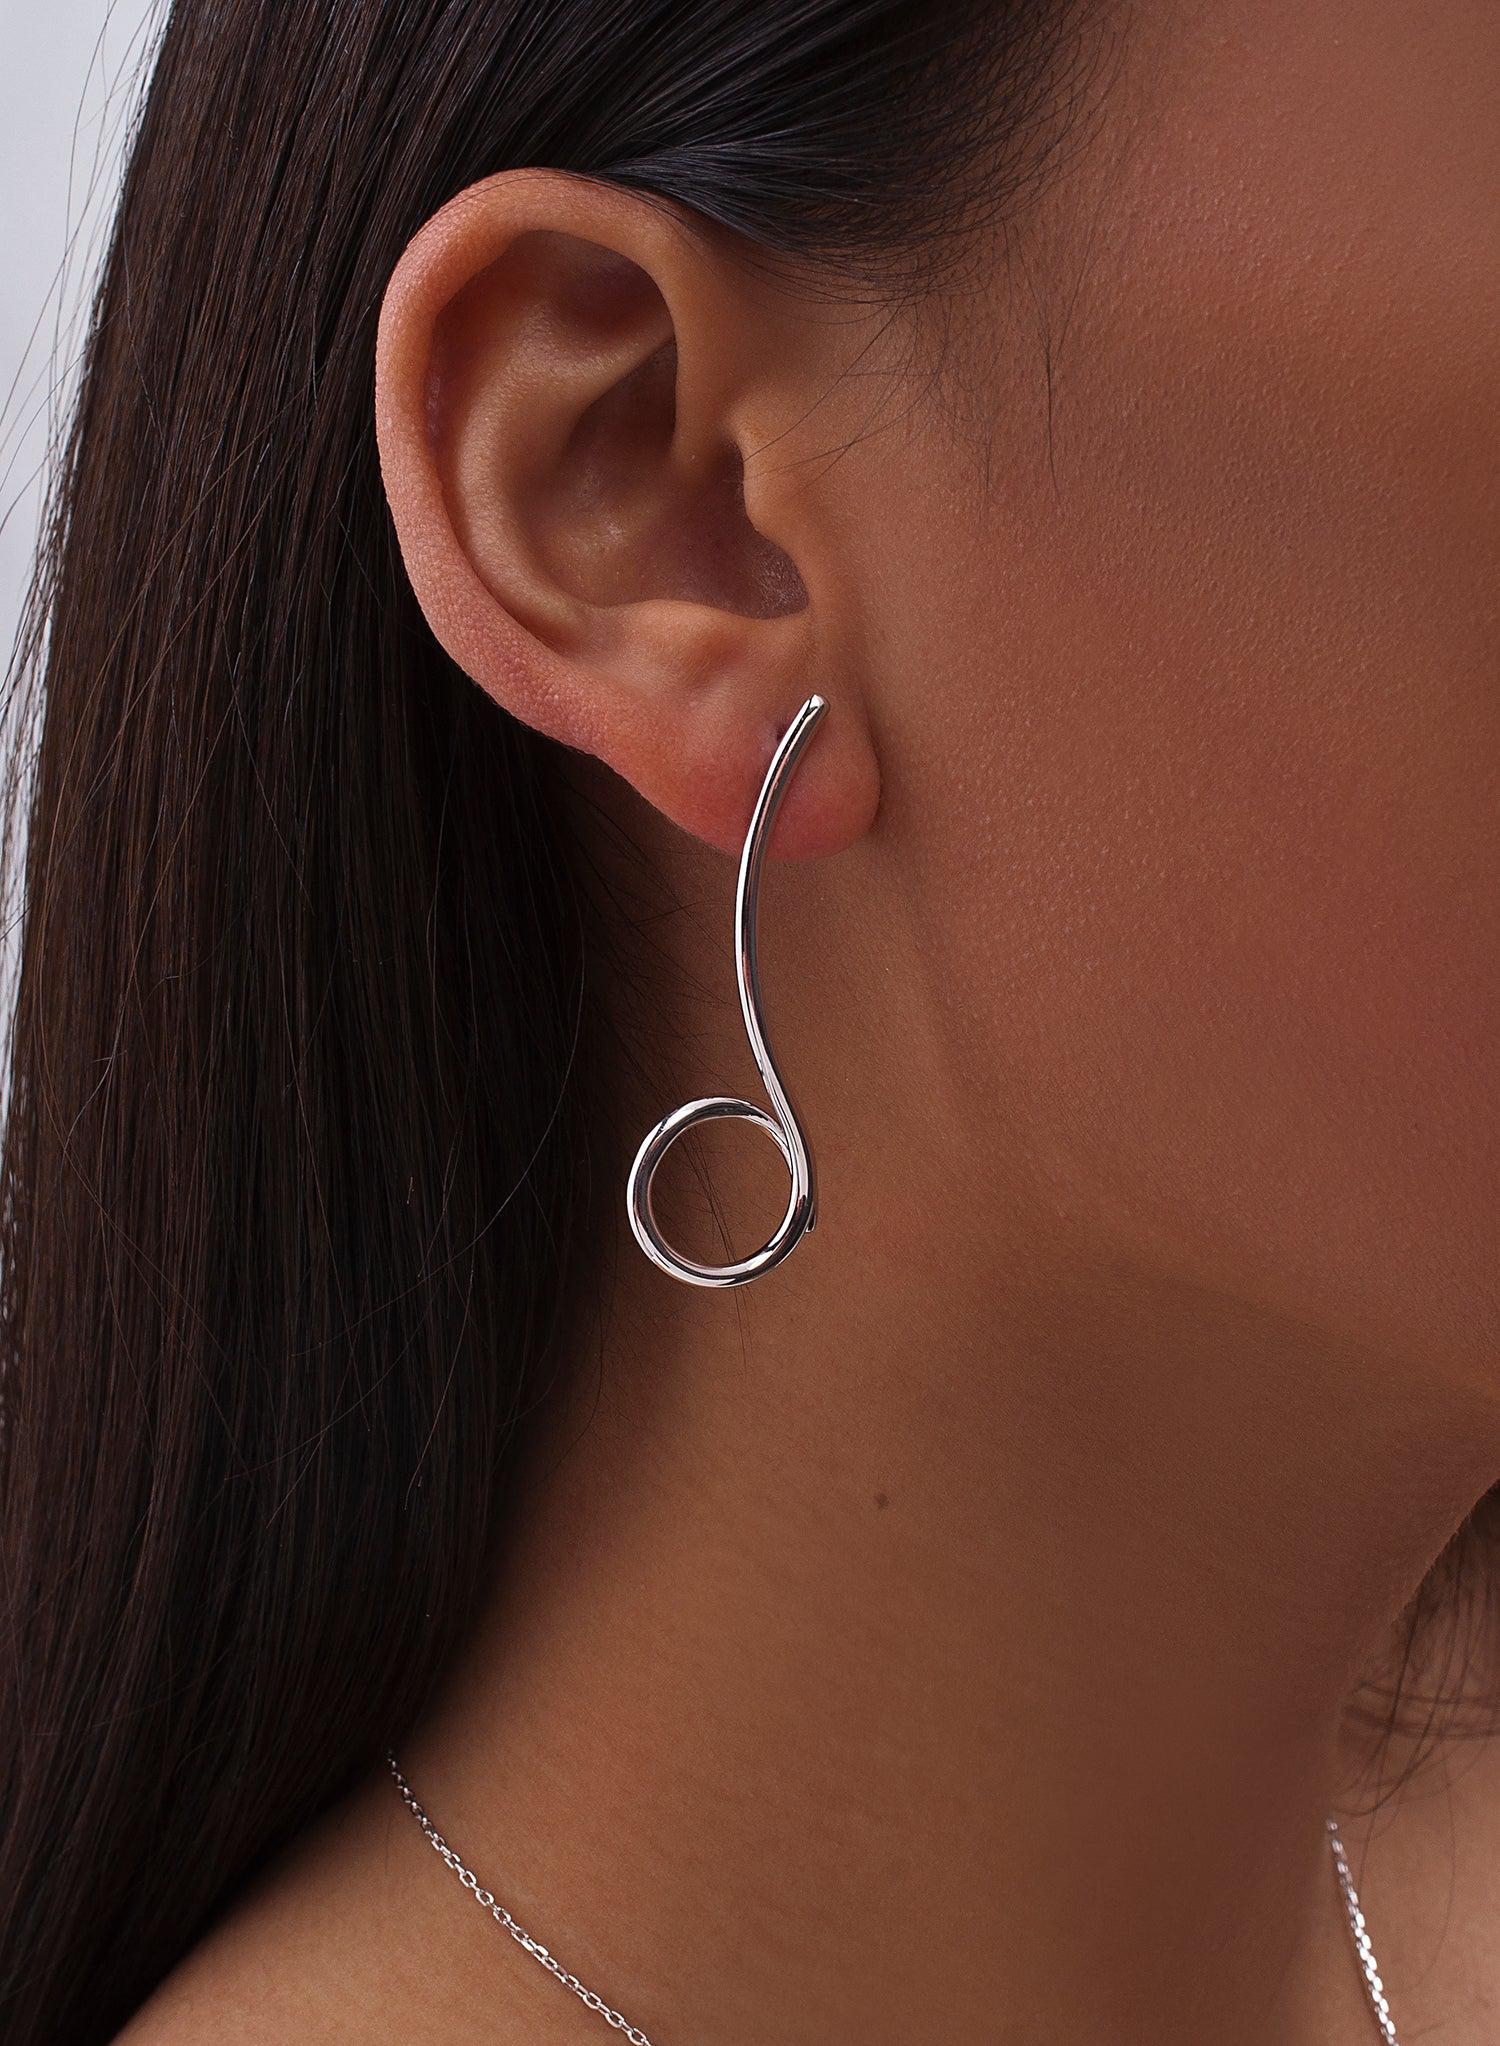 Earrings - Original earrings in plain silver intertwined design